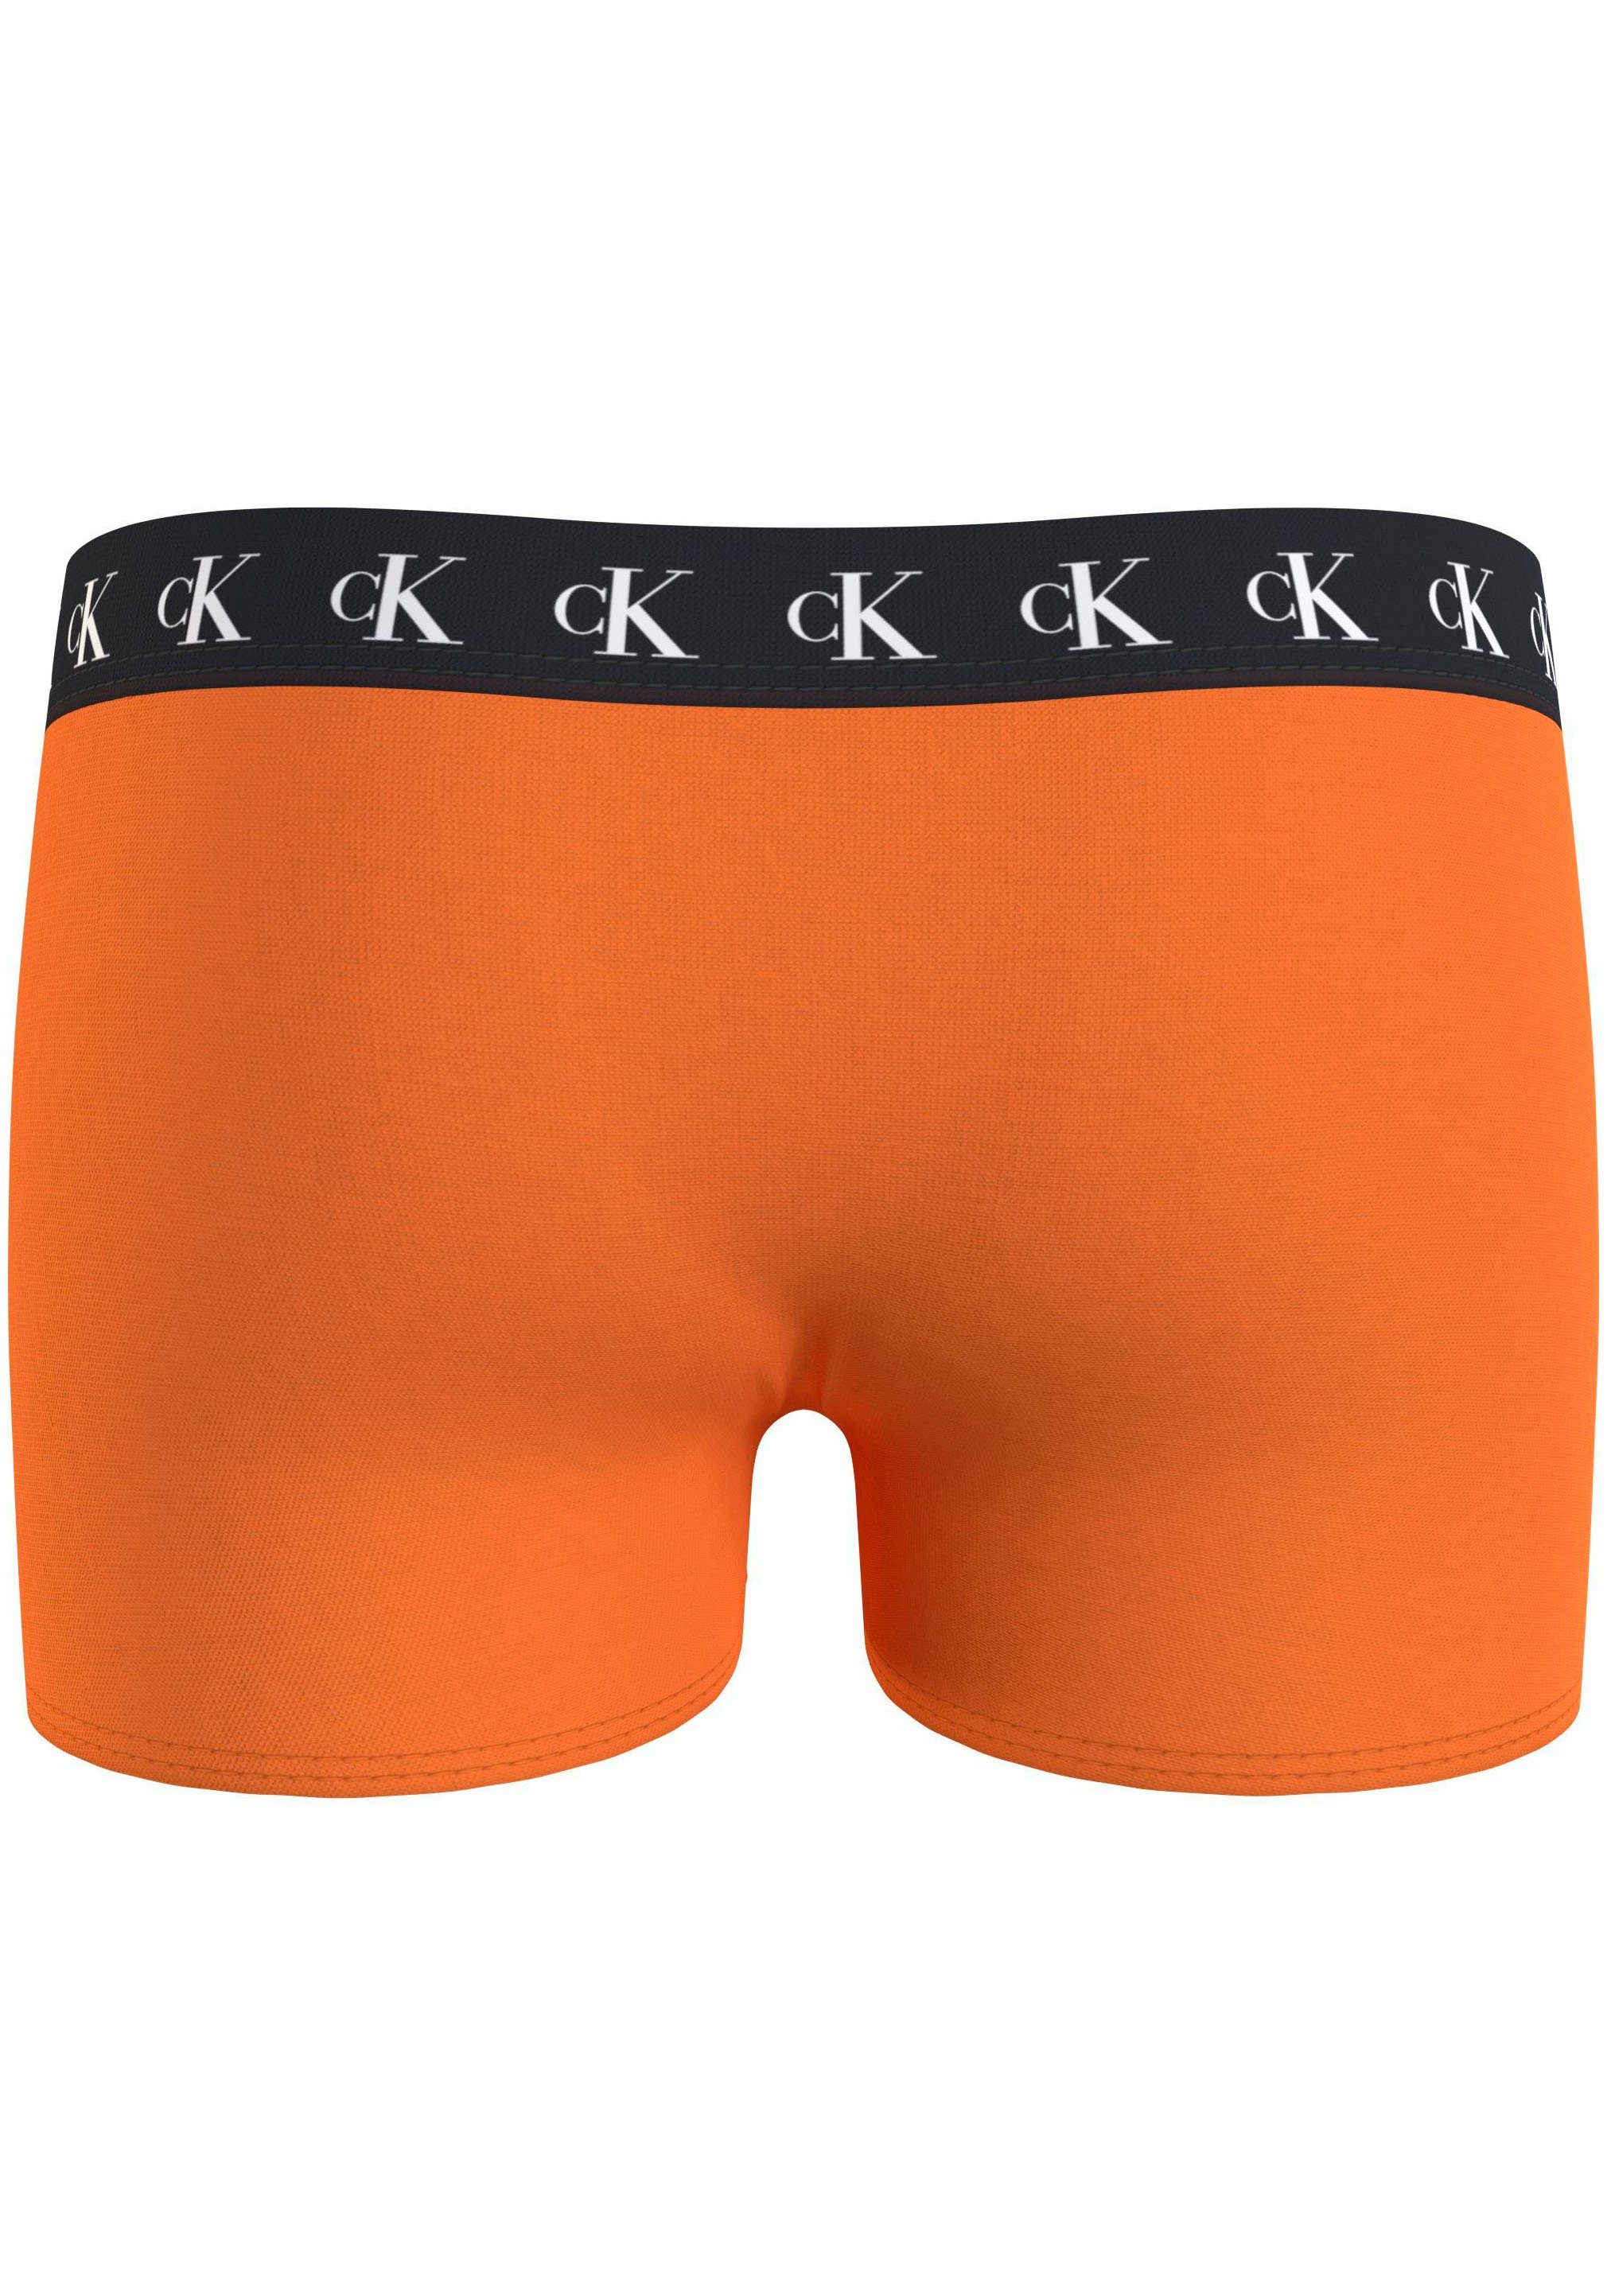 Underwear mit Warpedprint/Vibrantorange/Tarpsblue Slip TRUNK 3PK Markenlabel (Packung, am Klein Calvin Bund 3er-Pack) Calvin Klein